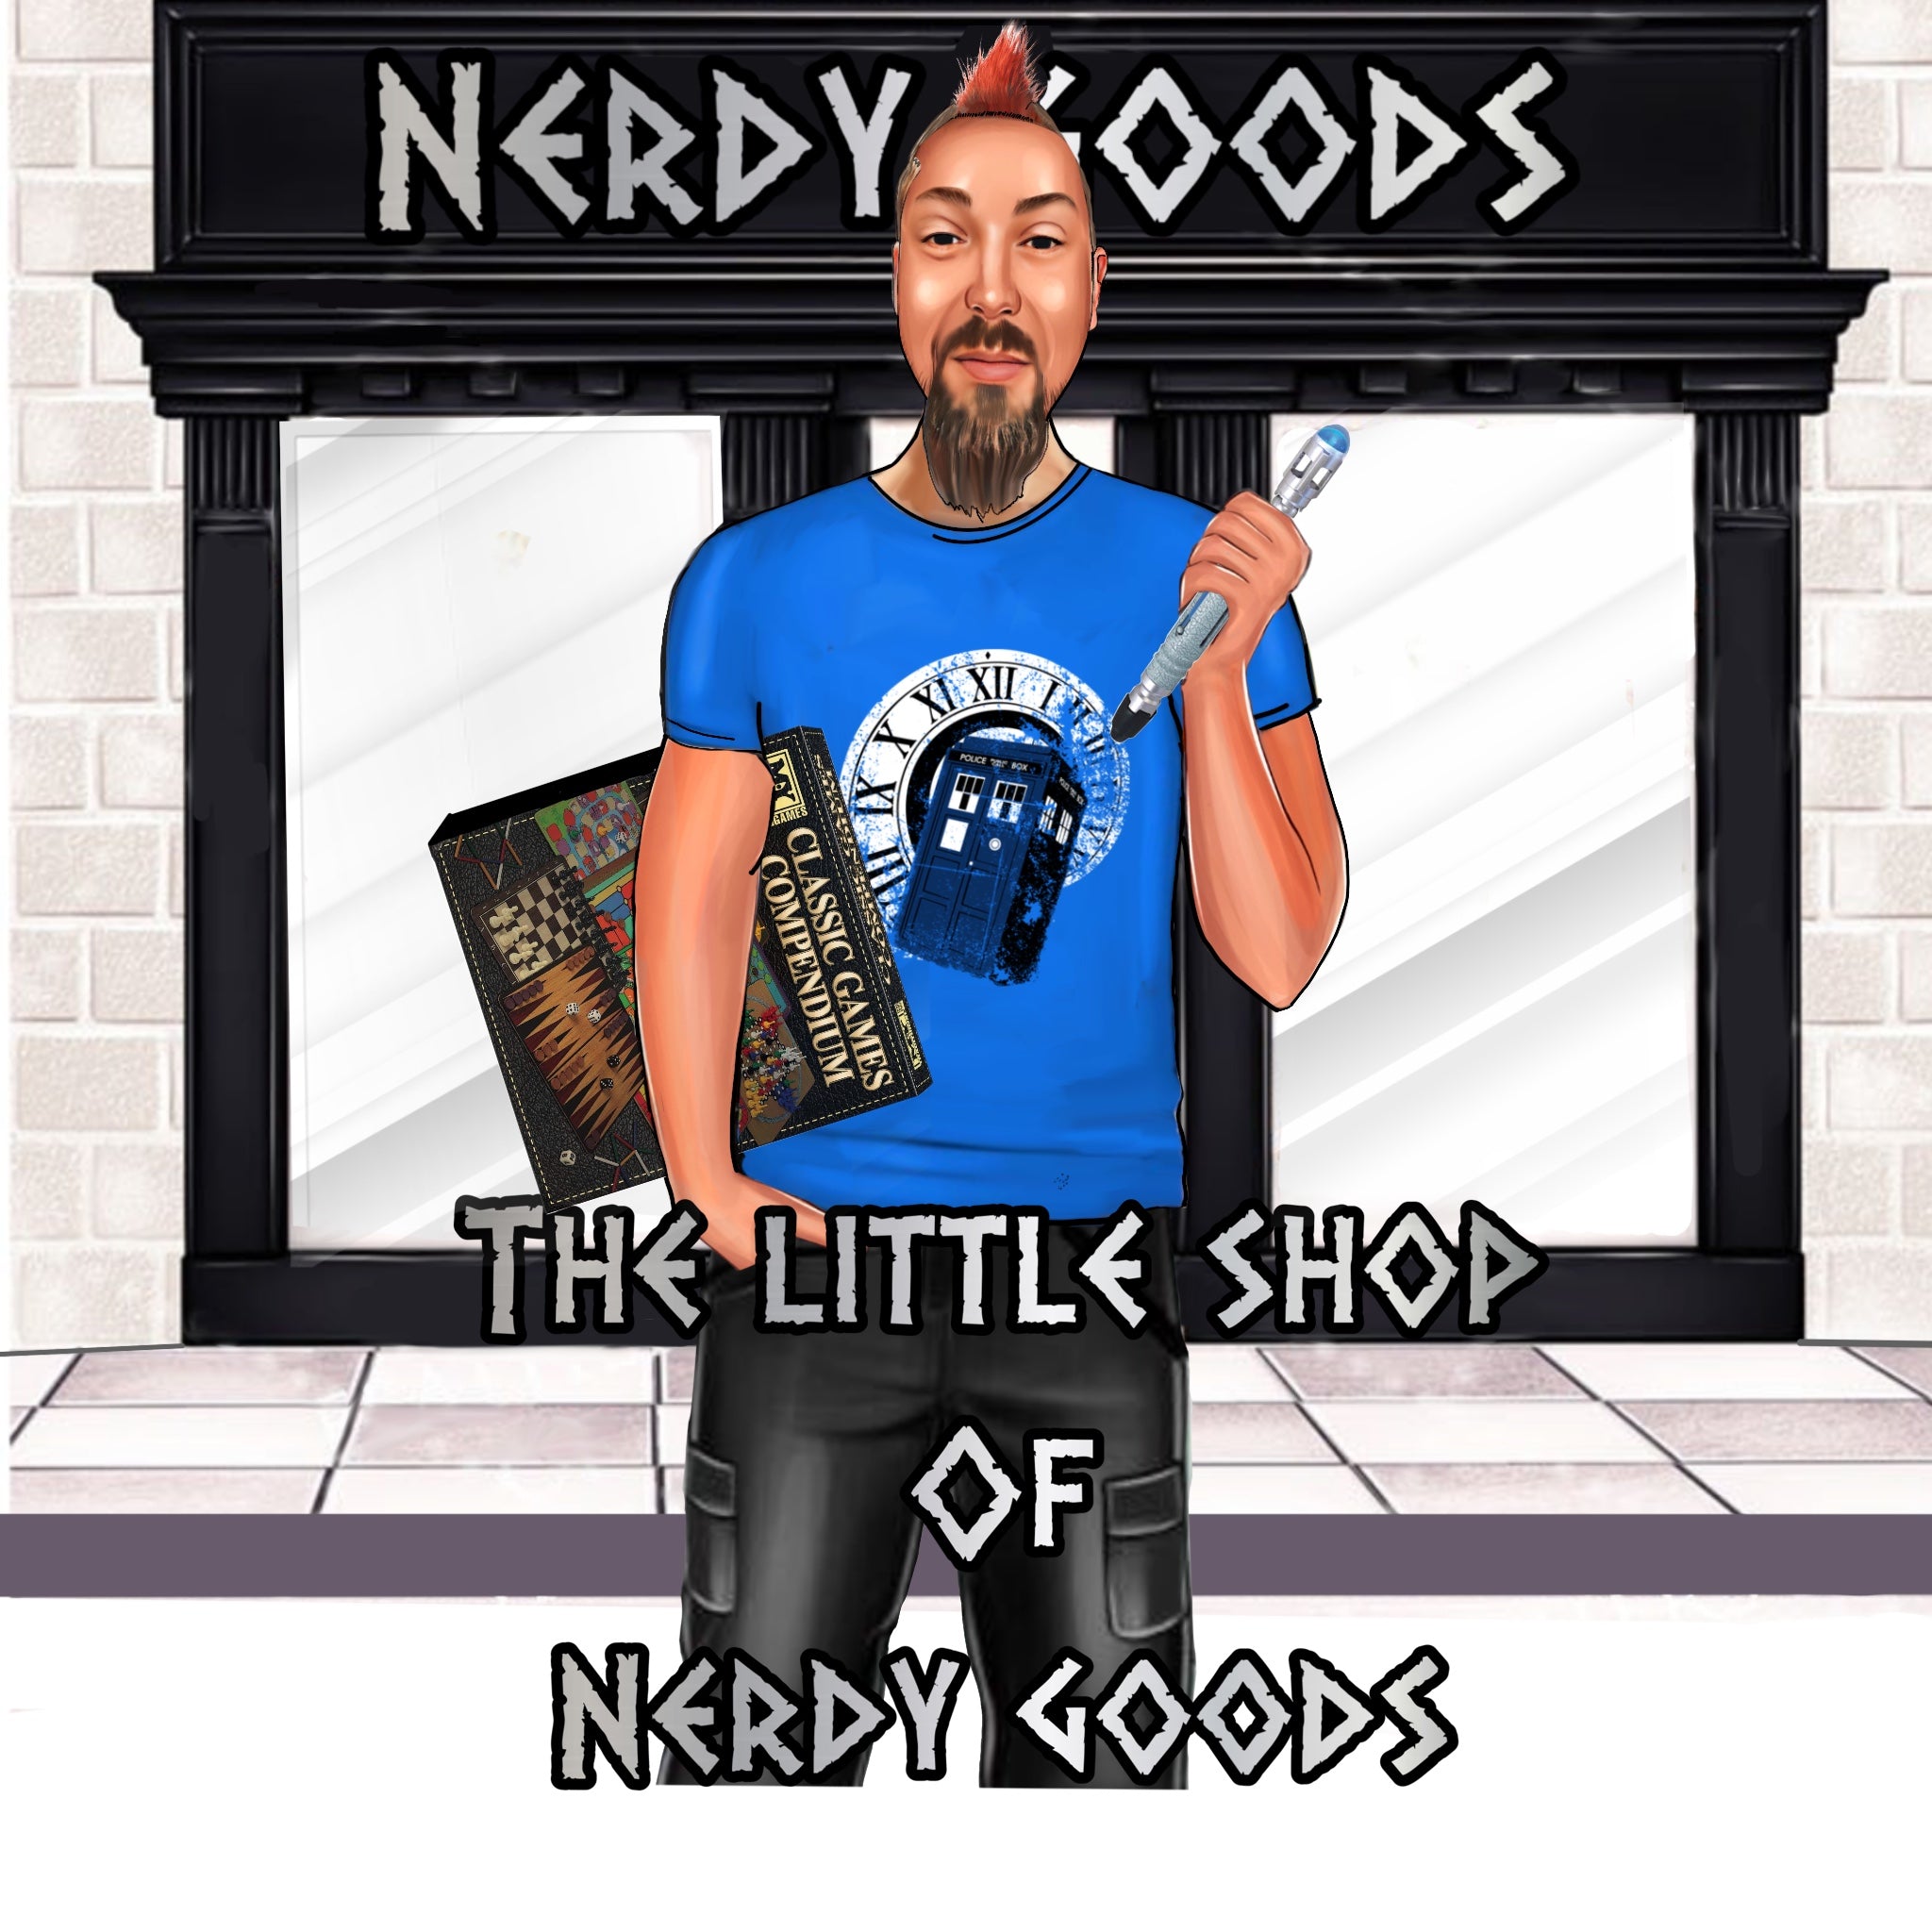 Little shop of nerdy goods 